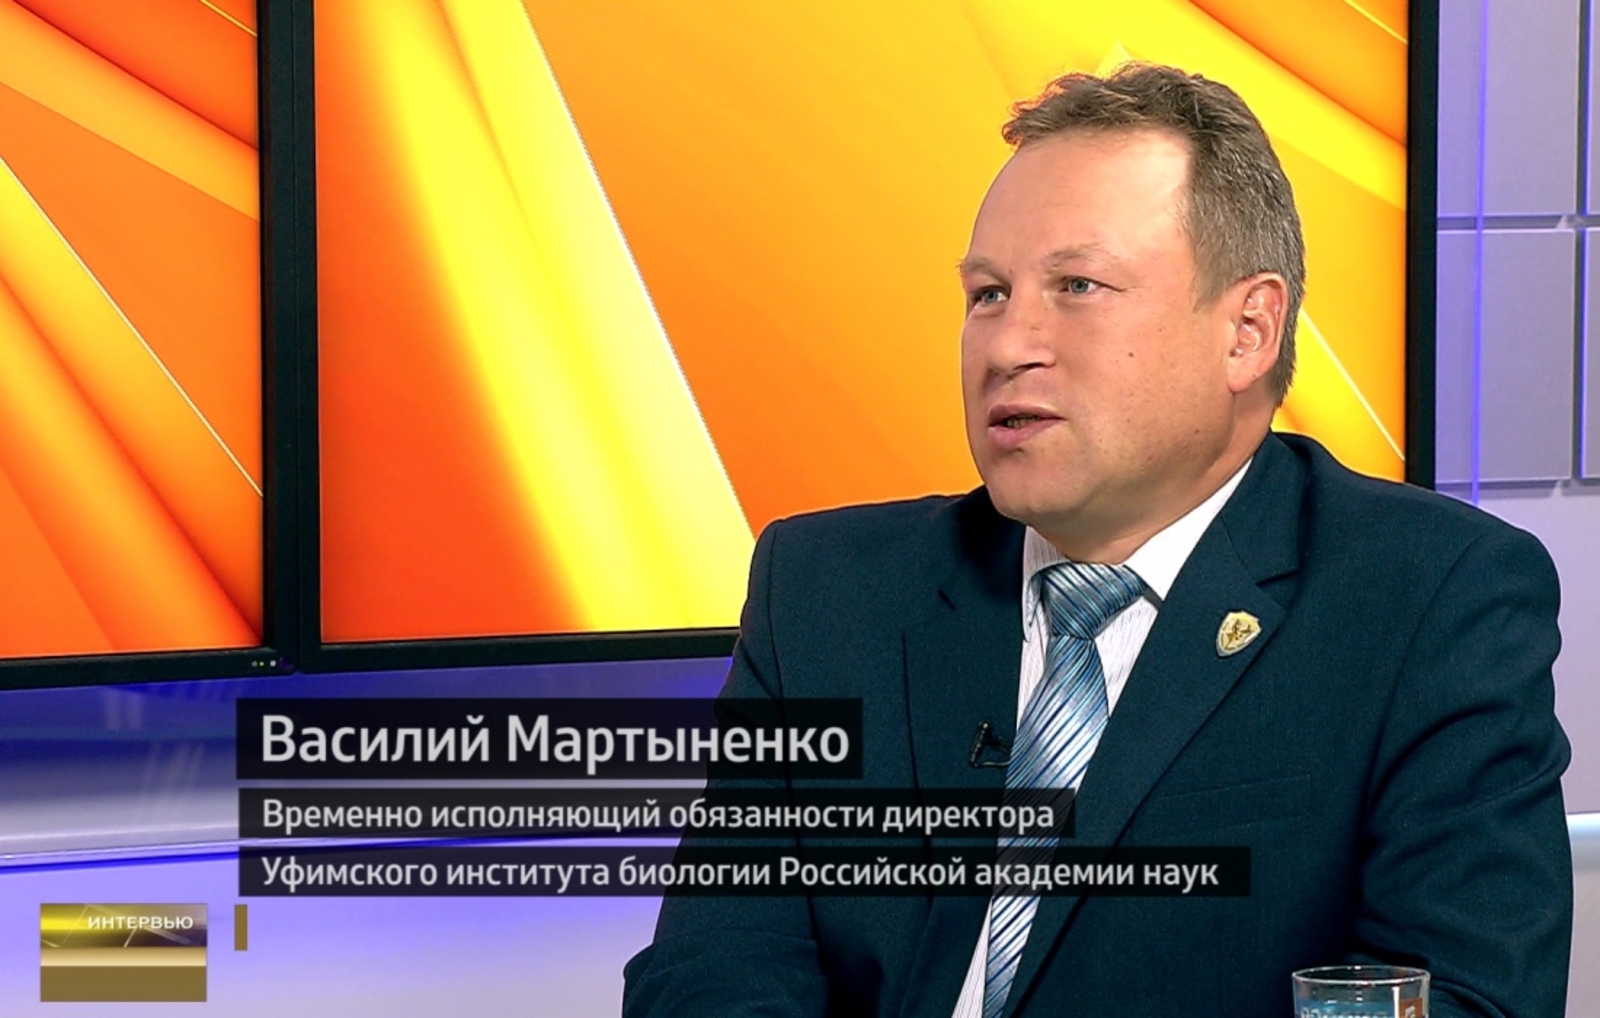 Руководителем Уфимского федерального исследовательского центра РАН назначен Василий Мартыненко